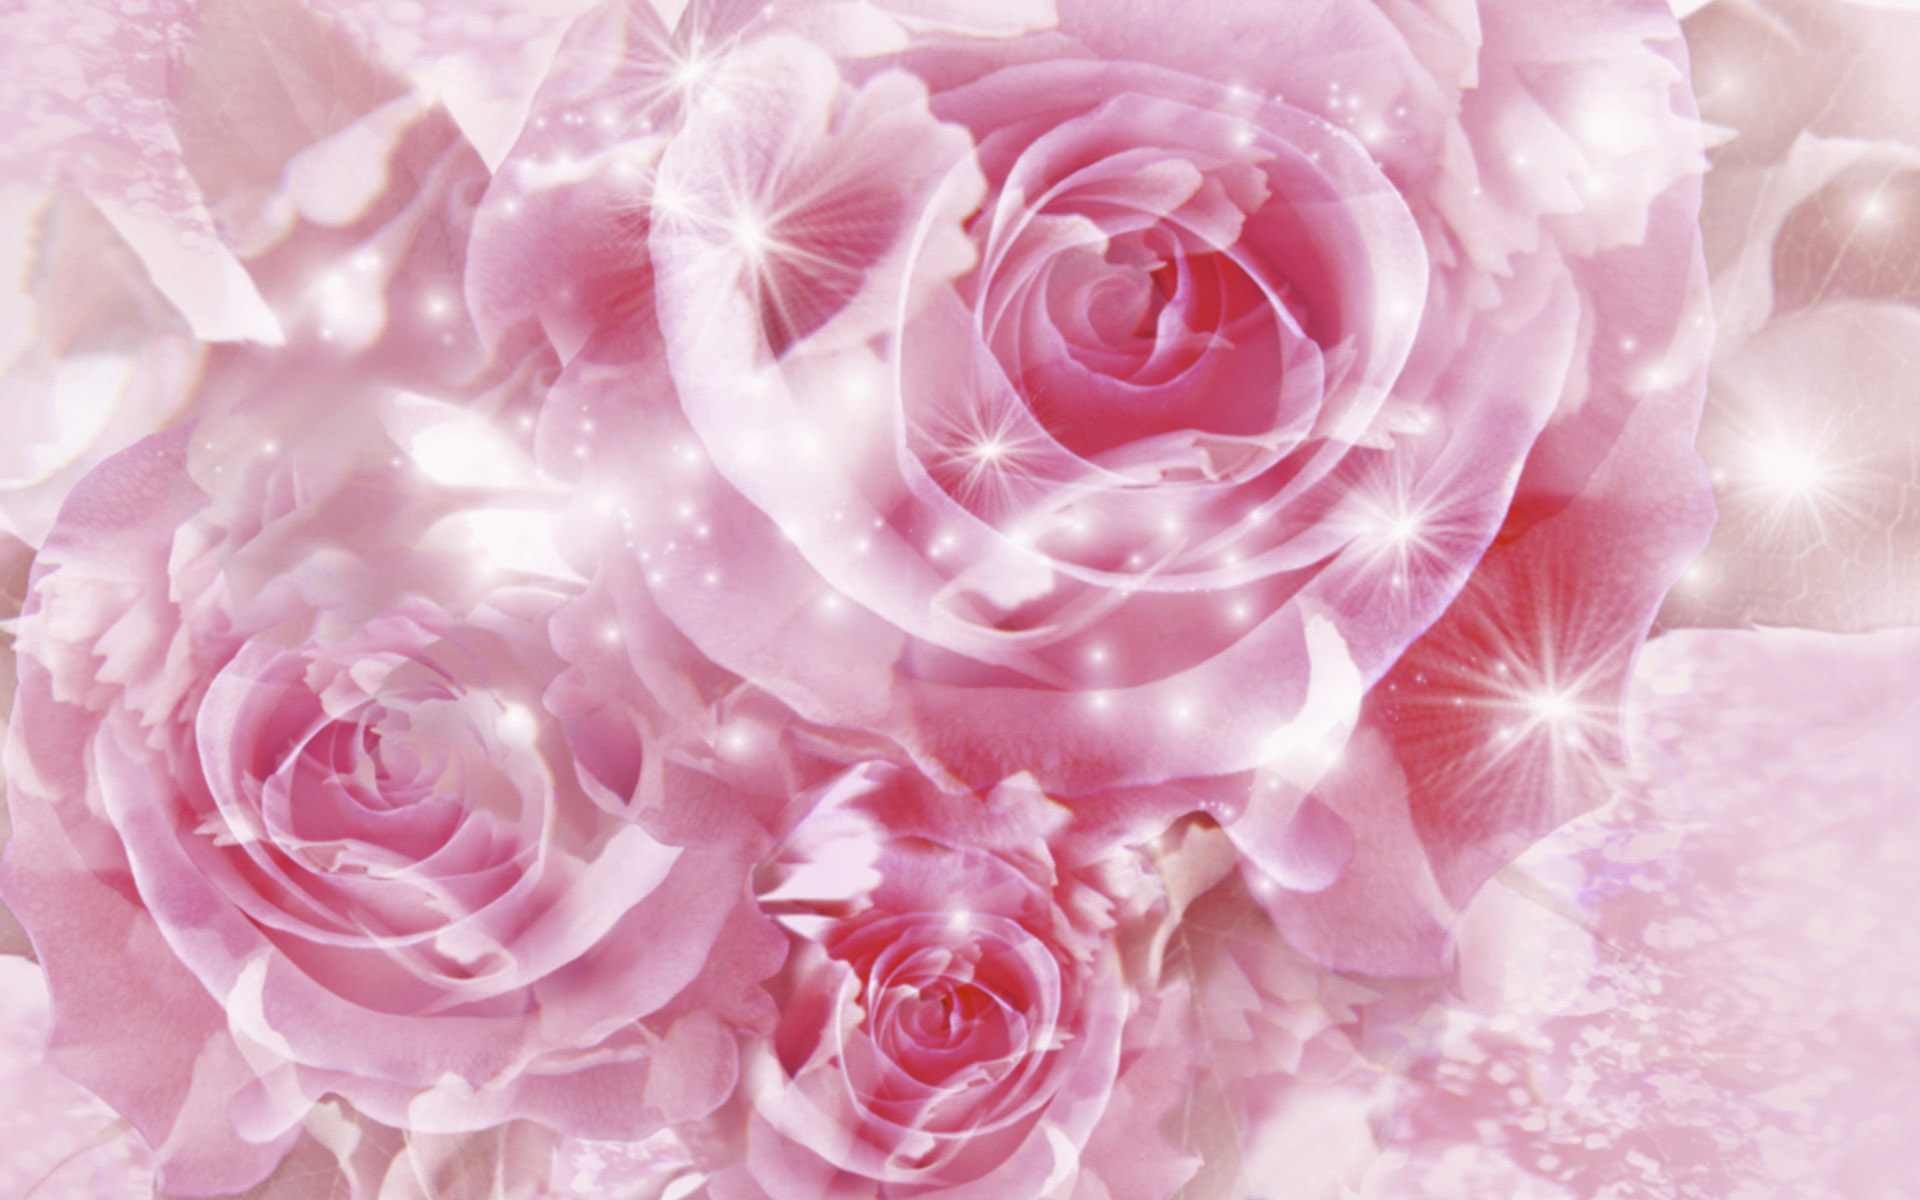 Hoa hồng hồng là một trong những loài hoa thường được công nhận về vẻ đẹp thanh lịch, quý phái và tinh tế. Màu hồng nhạt của nó làm cho bất kỳ hình ảnh nào cũng trở nên tinh tế và giản dị. Hãy thư giãn với những bức ảnh hoa hồng hồng và cảm nhận sự thanh lịch của chúng.